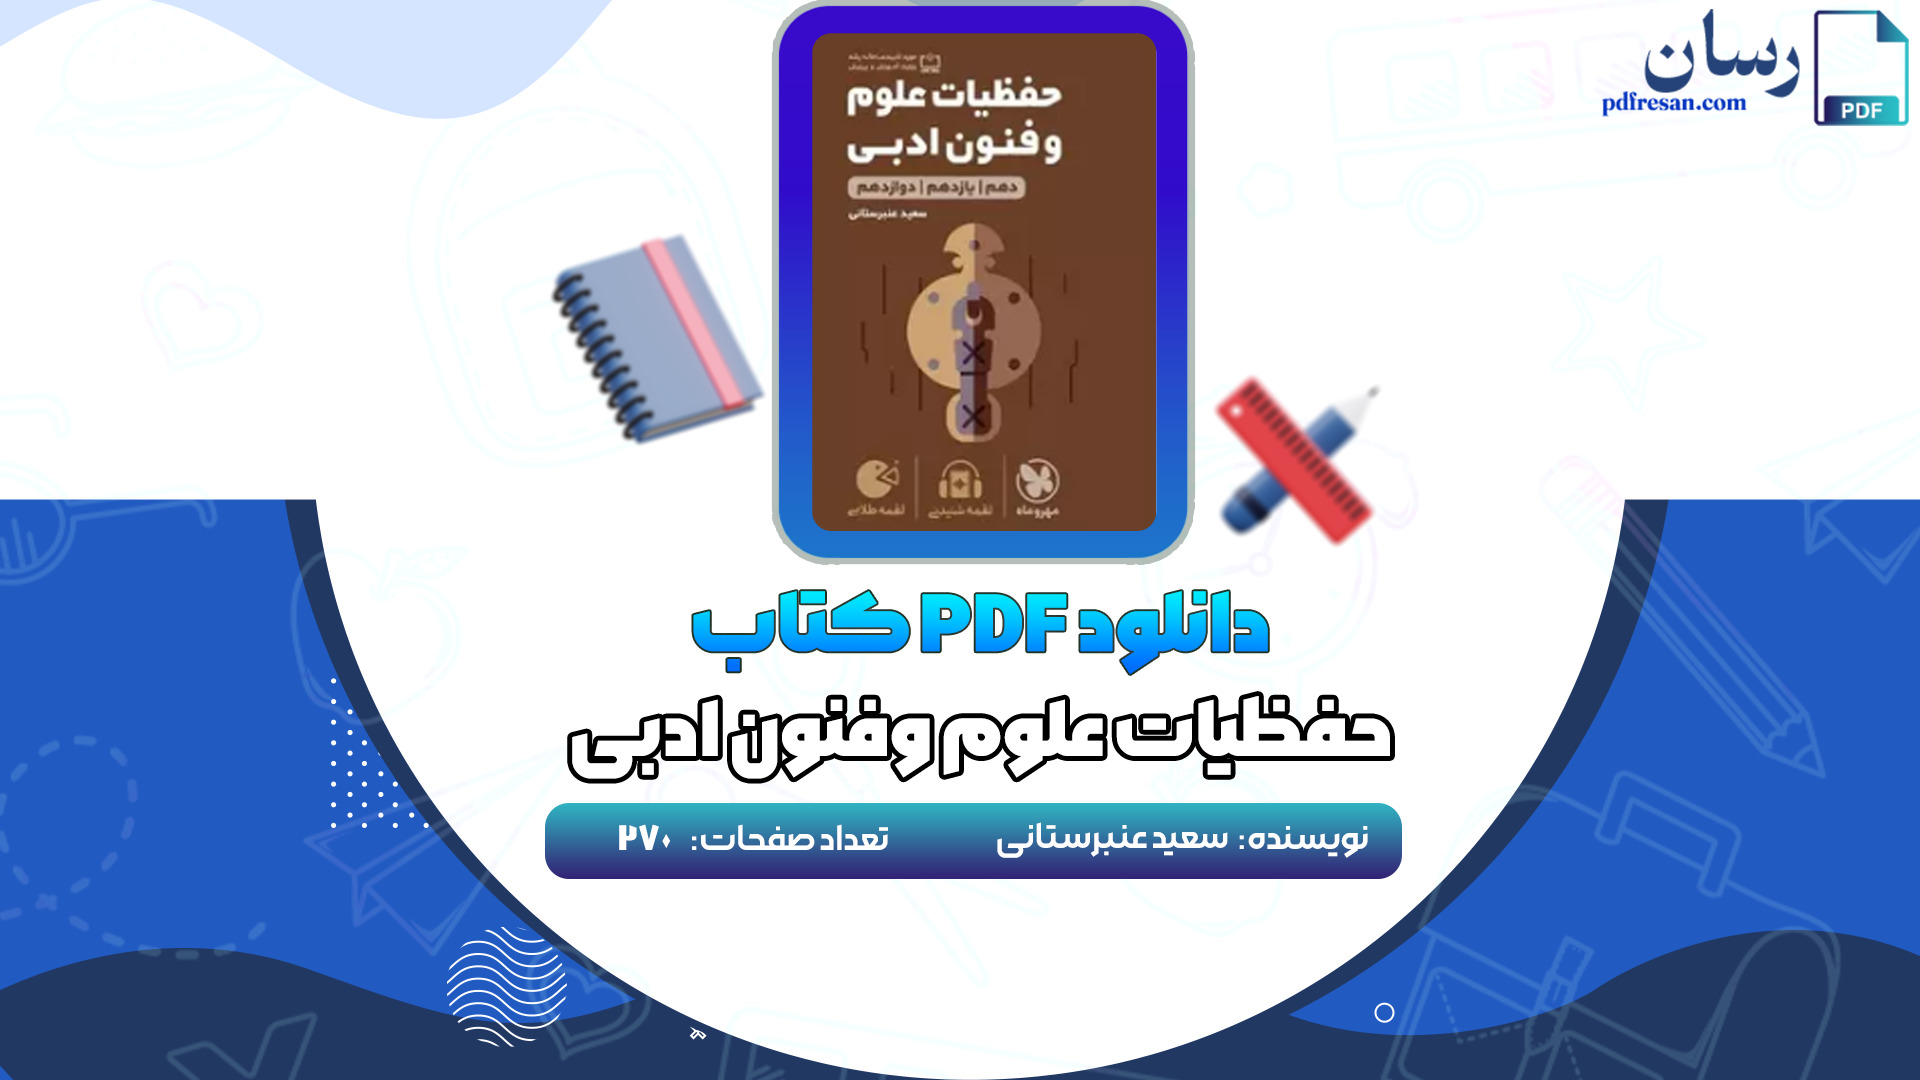 دانلود کتاب حفظیات علوم وفنون ادبی سعید عنبرستانی PDF